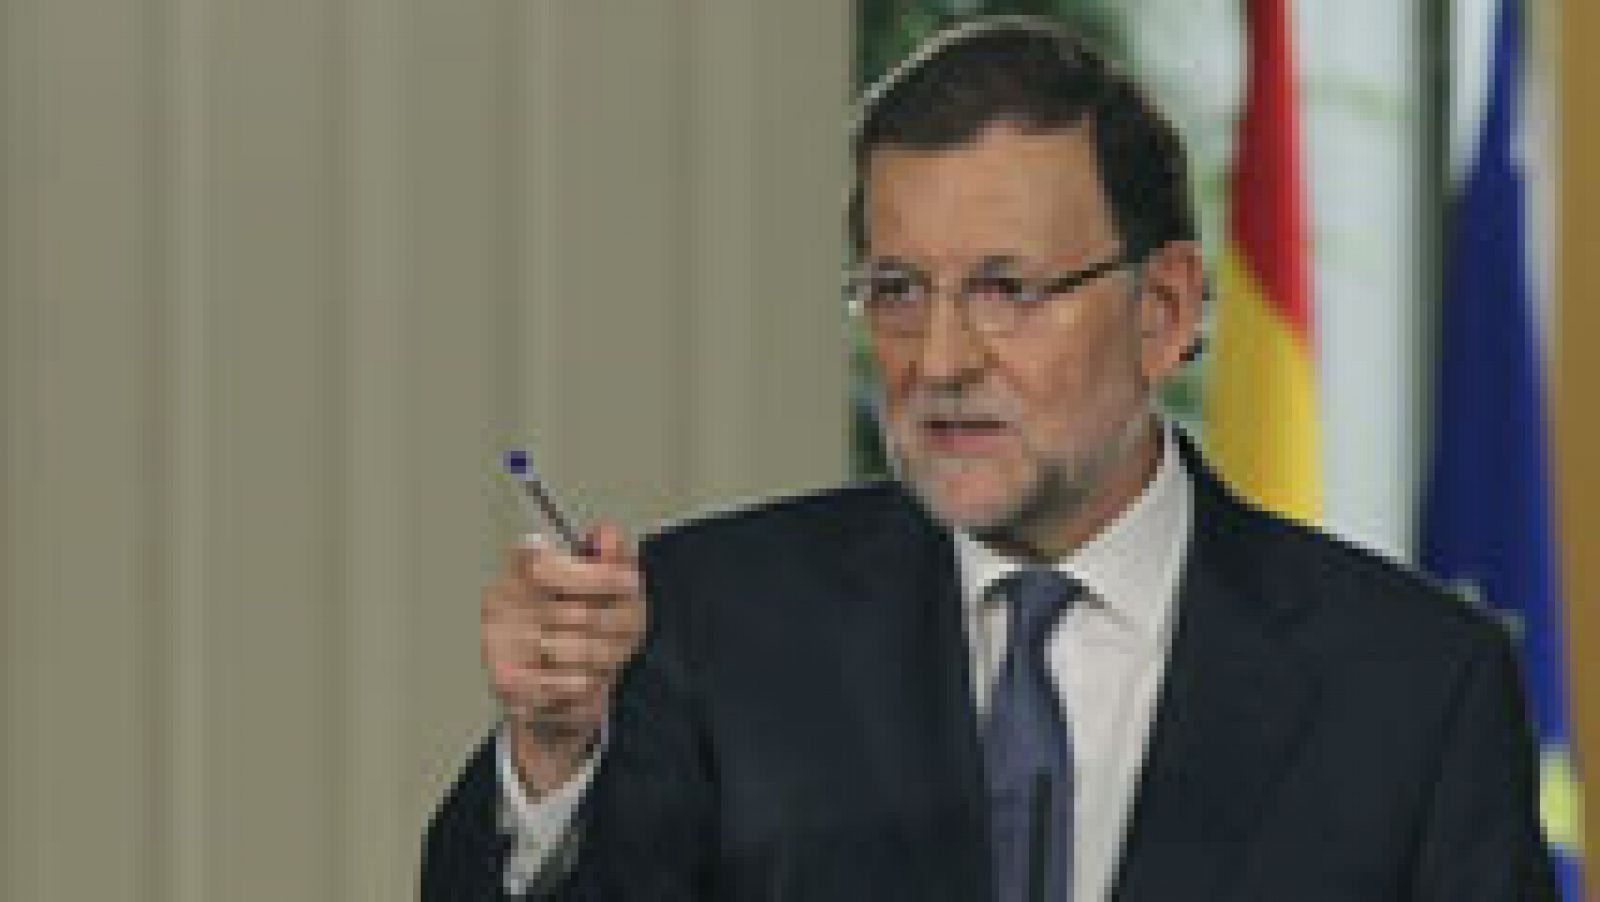 Rajoy avisa a Mas: el Gobierno defenderá "activamente la ley"